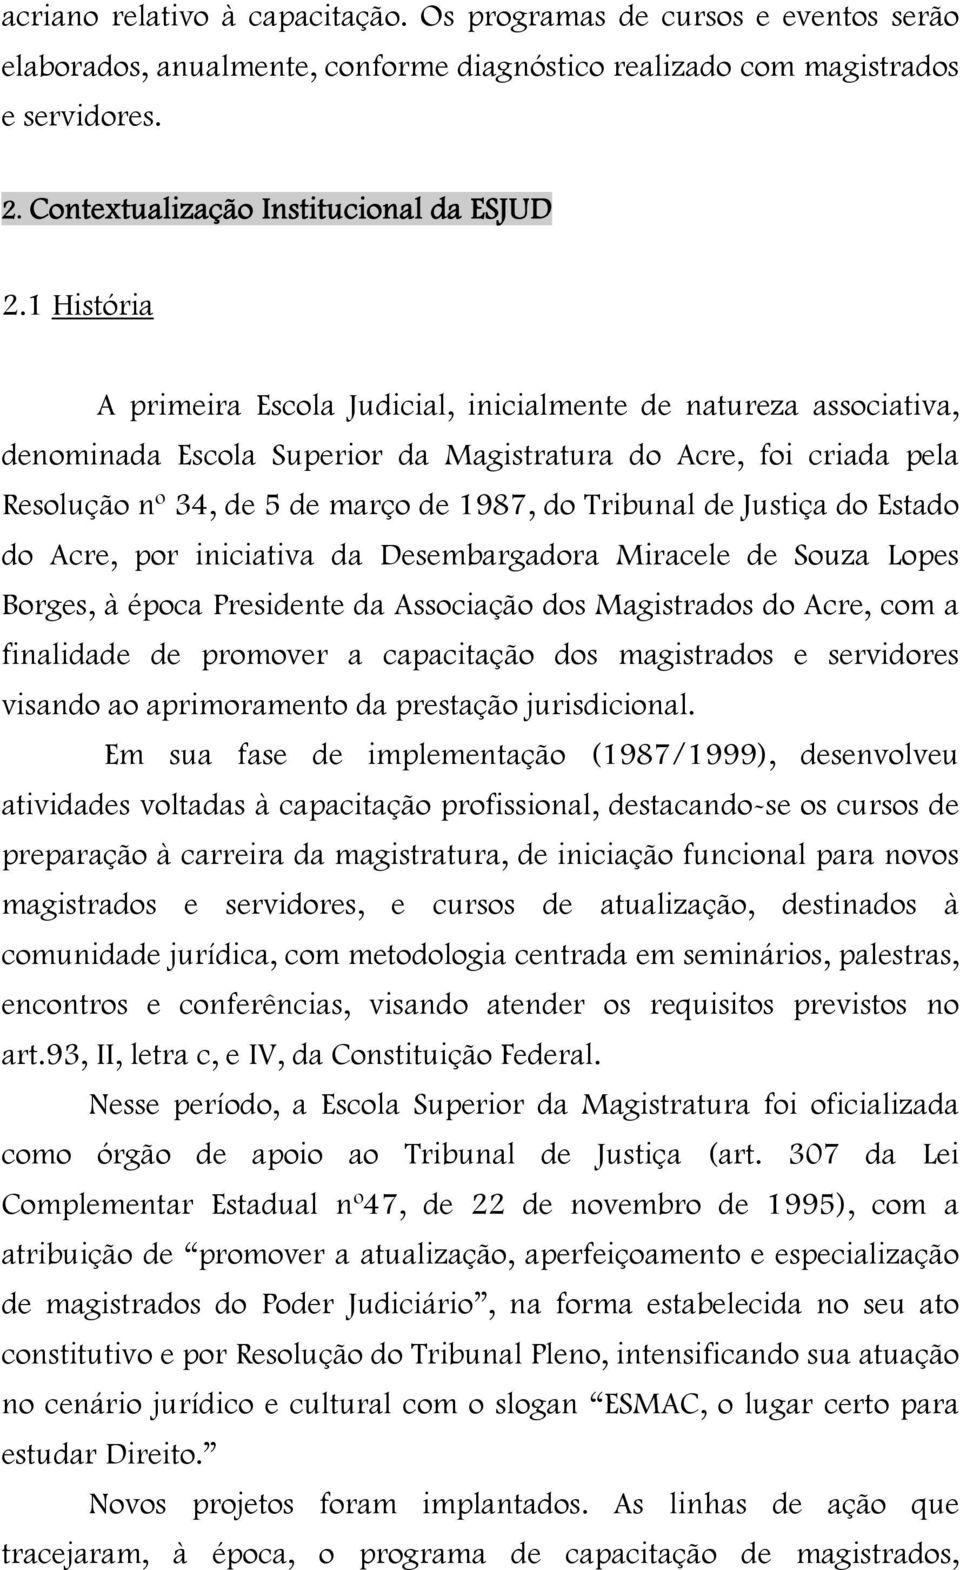 1 História A primeira Escola Judicial, inicialmente de natureza associativa, denominada Escola Superior da Magistratura do Acre, foi criada pela Resolução nº 34, de 5 de março de 1987, do Tribunal de